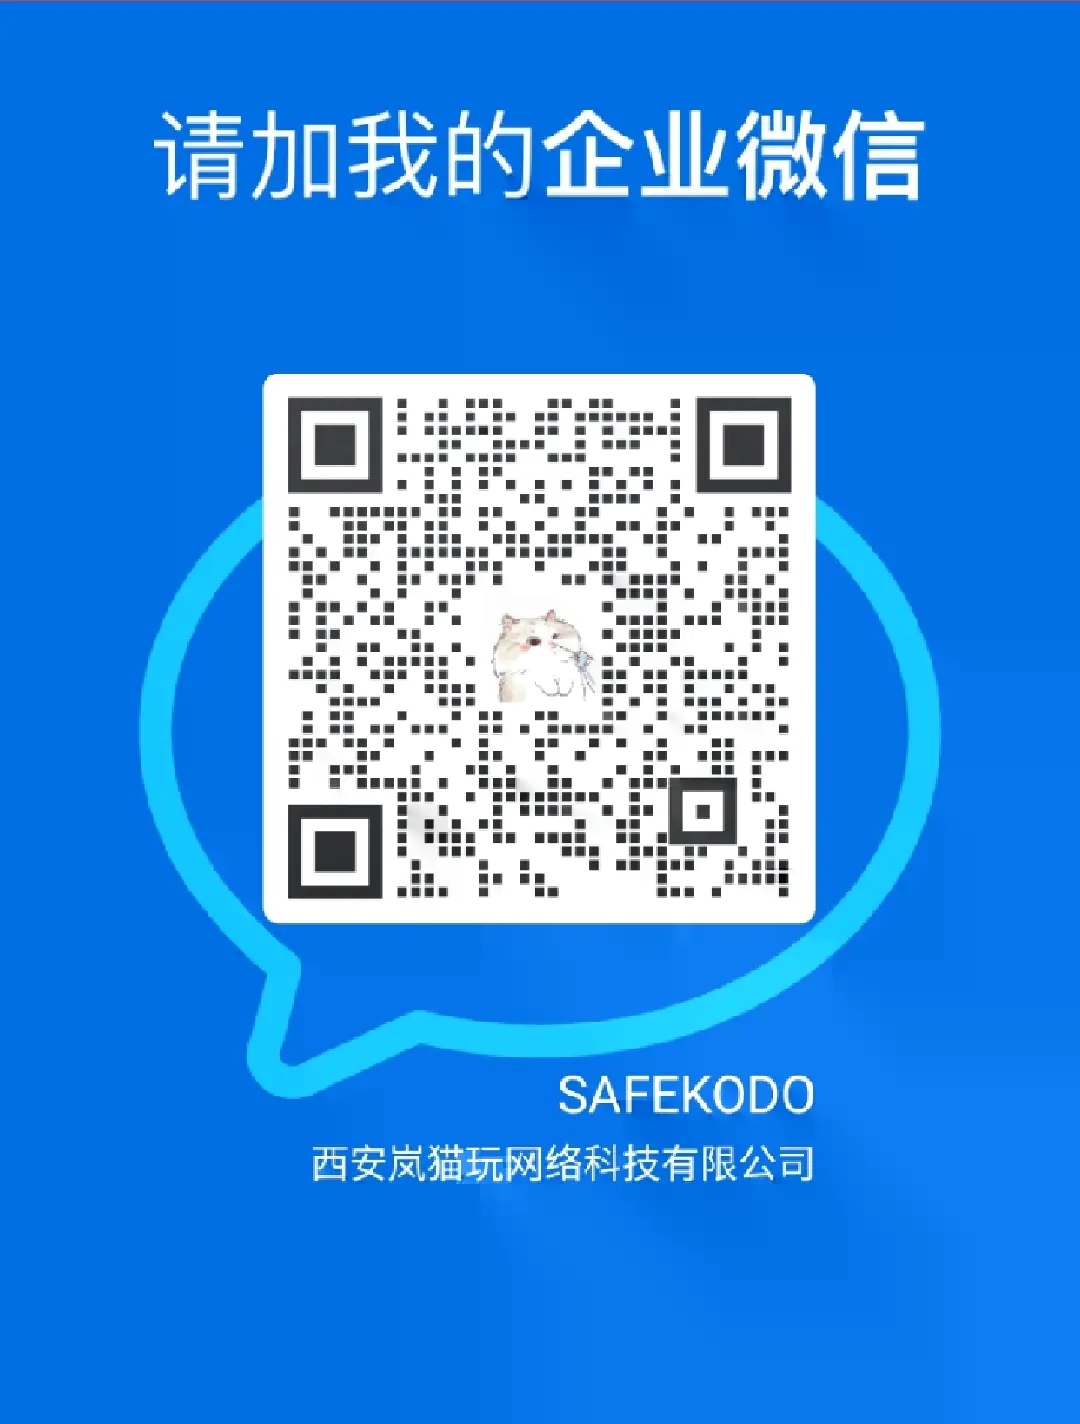 safekodo.com代码加密